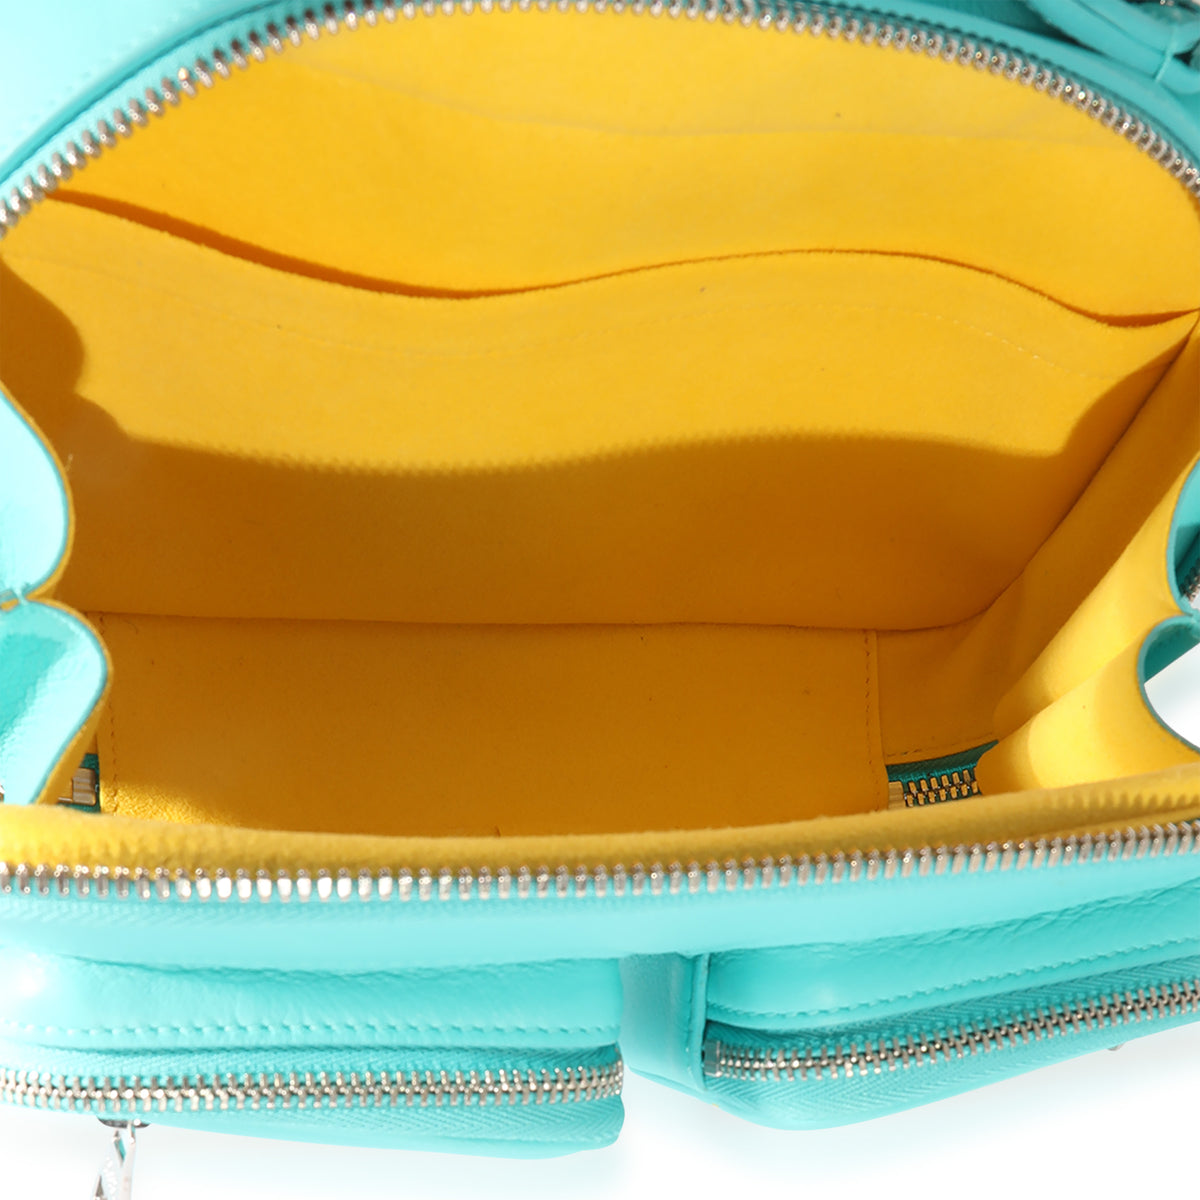 LOUIS VUITTON Utility Crossbody  Handbag Review + Comparisons